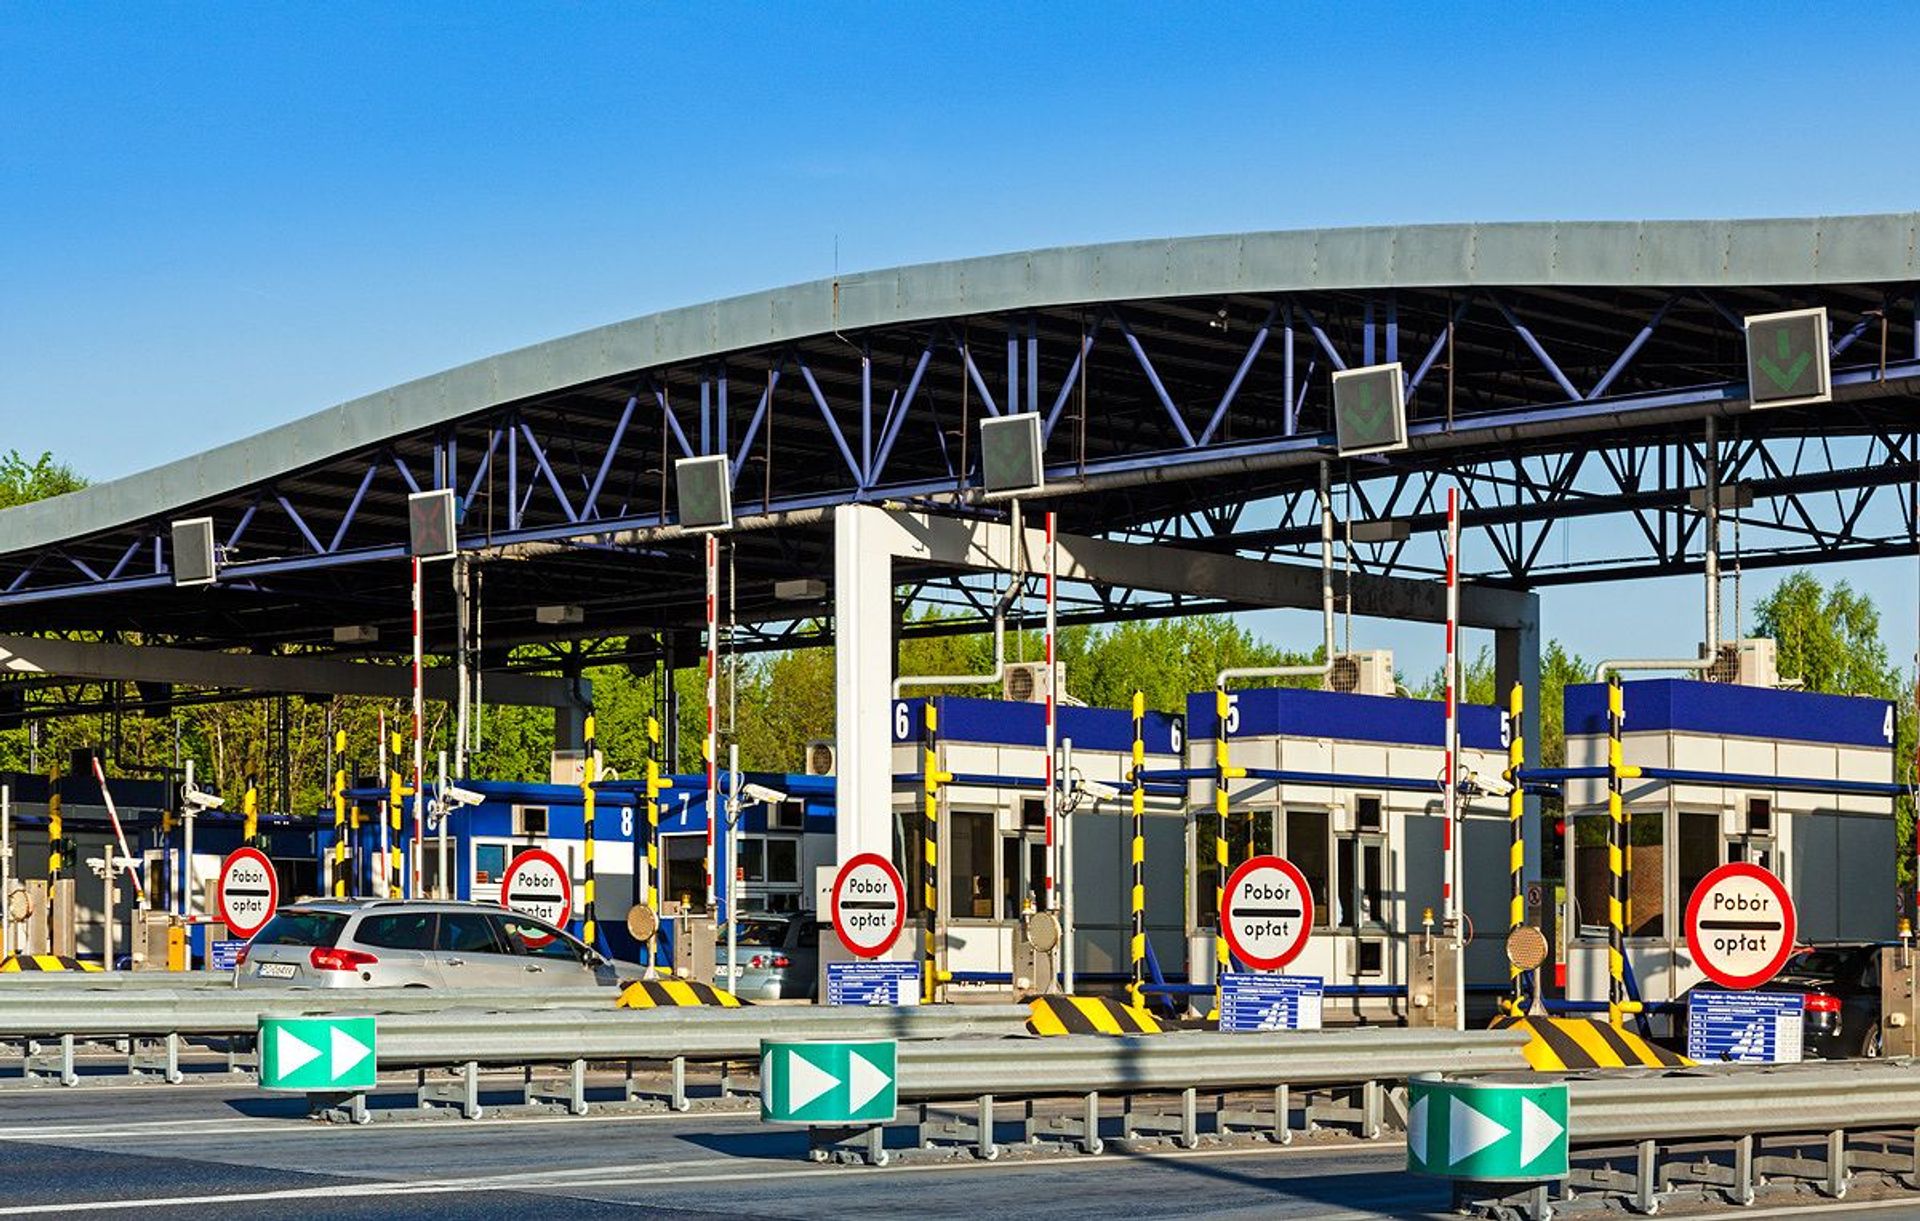  Stalexport Autostrada Małopolska zamieni bramki samoobsługowe na kabiny inkasentów na placach poboru opłat w Mysłowicach i w Balicach.  Celem jest przyspieszenie odprawy podróżnych w miesiącach wakacyjnych